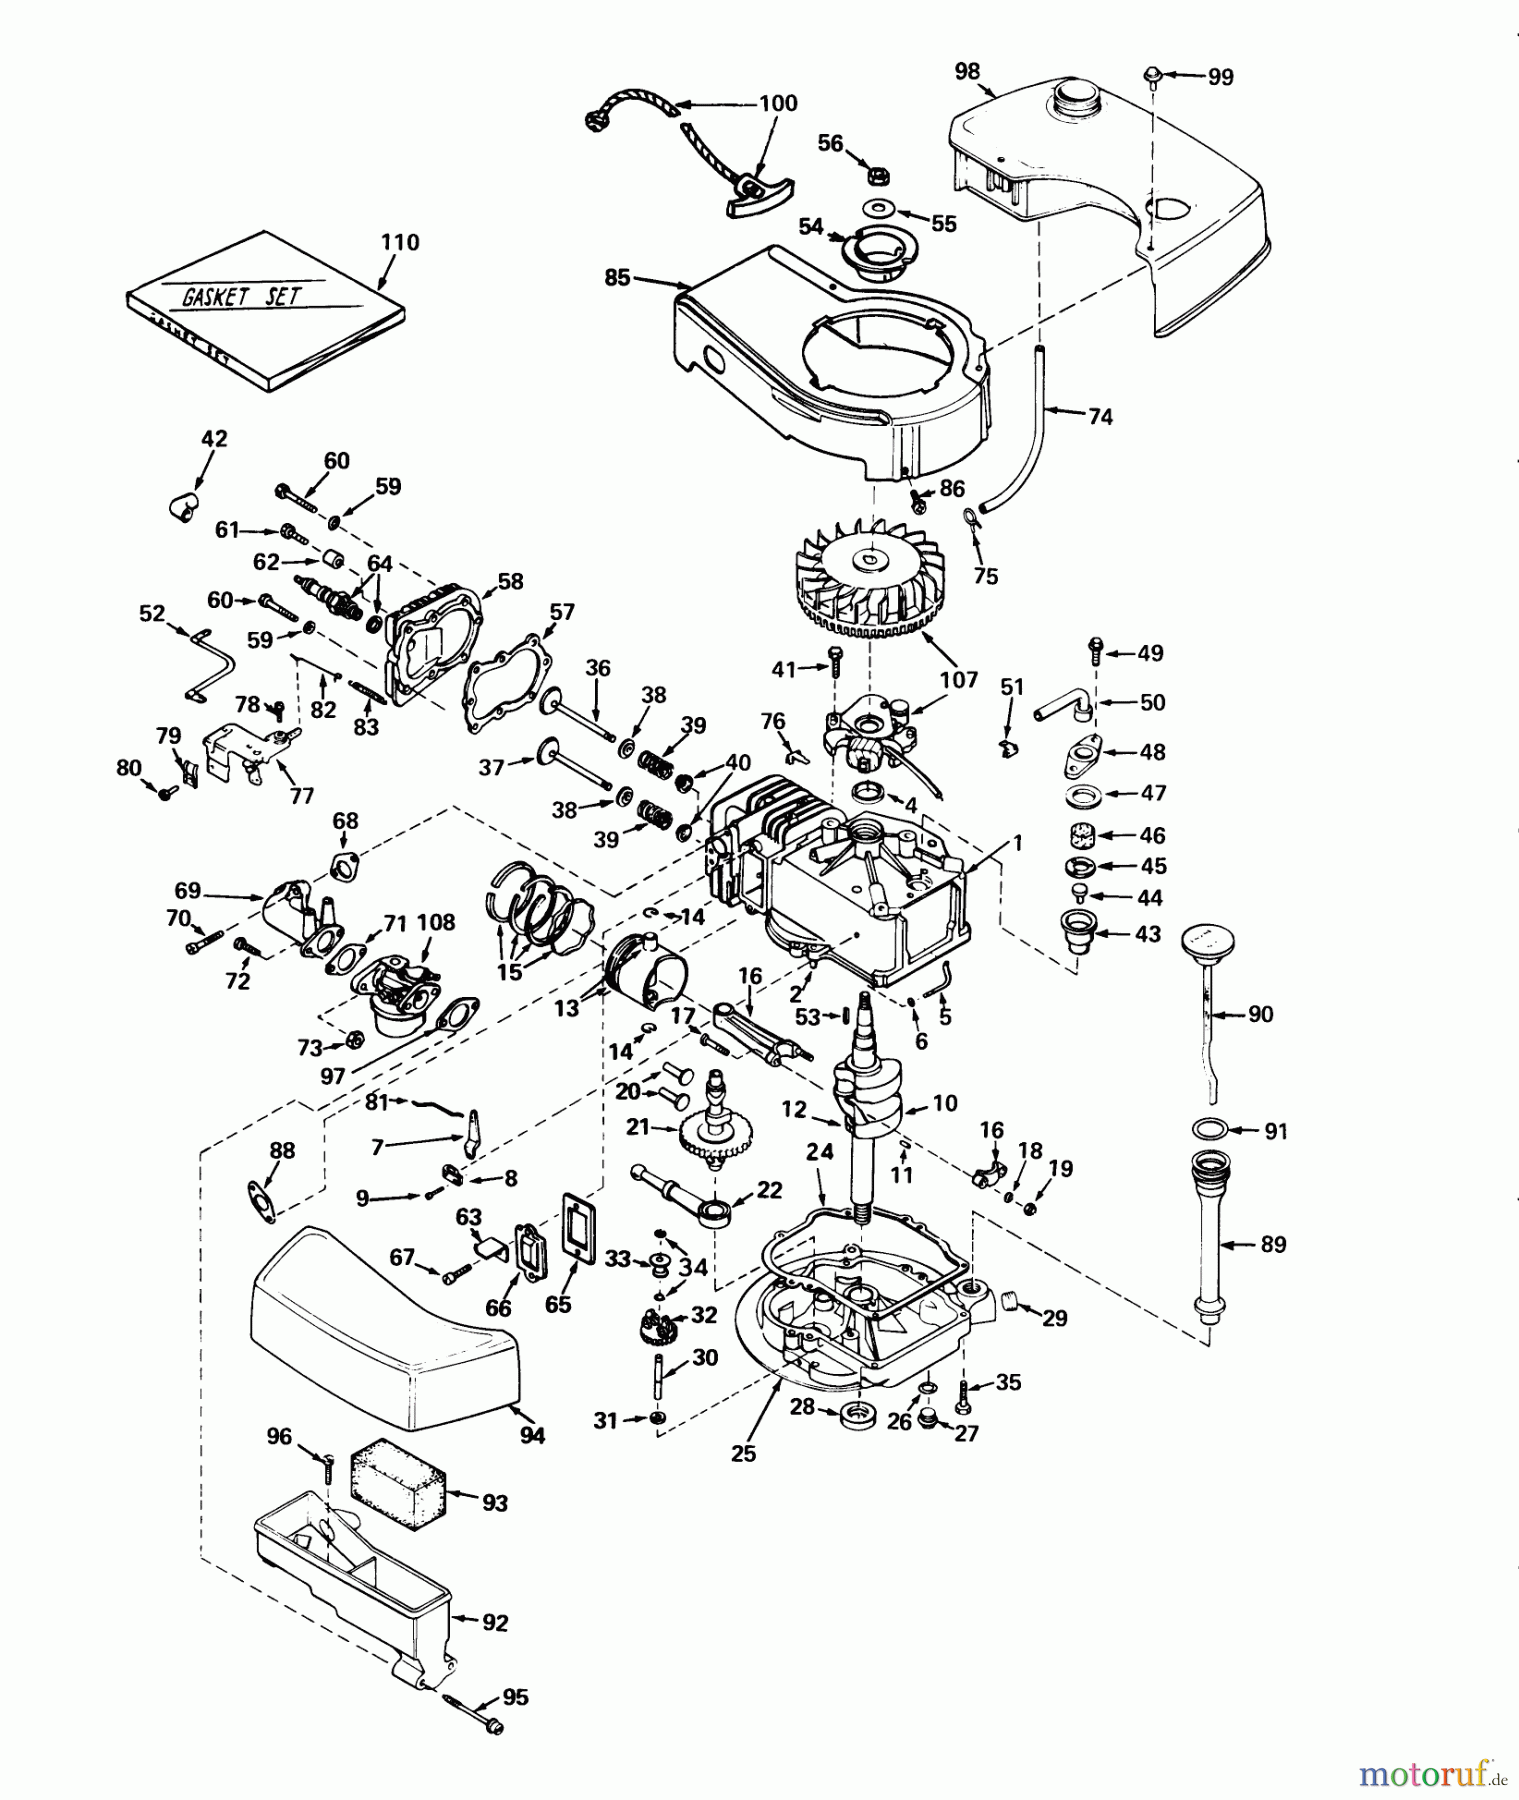  Toro Neu Mowers, Walk-Behind Seite 2 21711 - Toro Guardian Lawnmower, 1974 (4000001-4999999) ENGINE MODEL TNT100-10041 (MOWER MODEL NO. 21711)